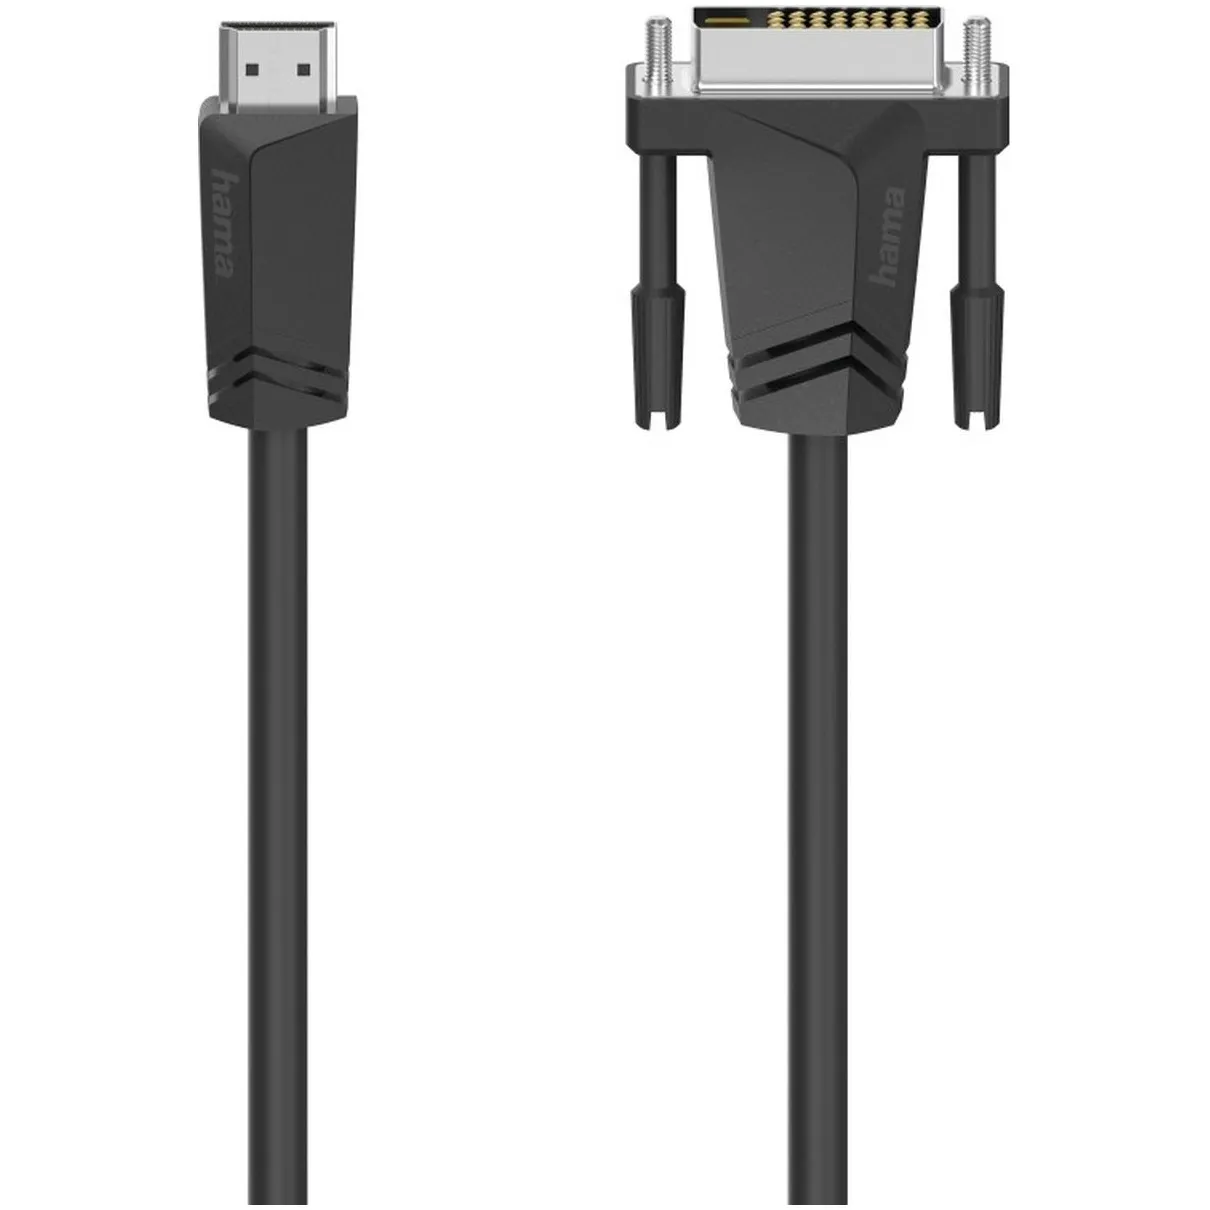 Hama Verbindingskabel, HDMI-stekker - DVI/D-stekker, 1,5 m